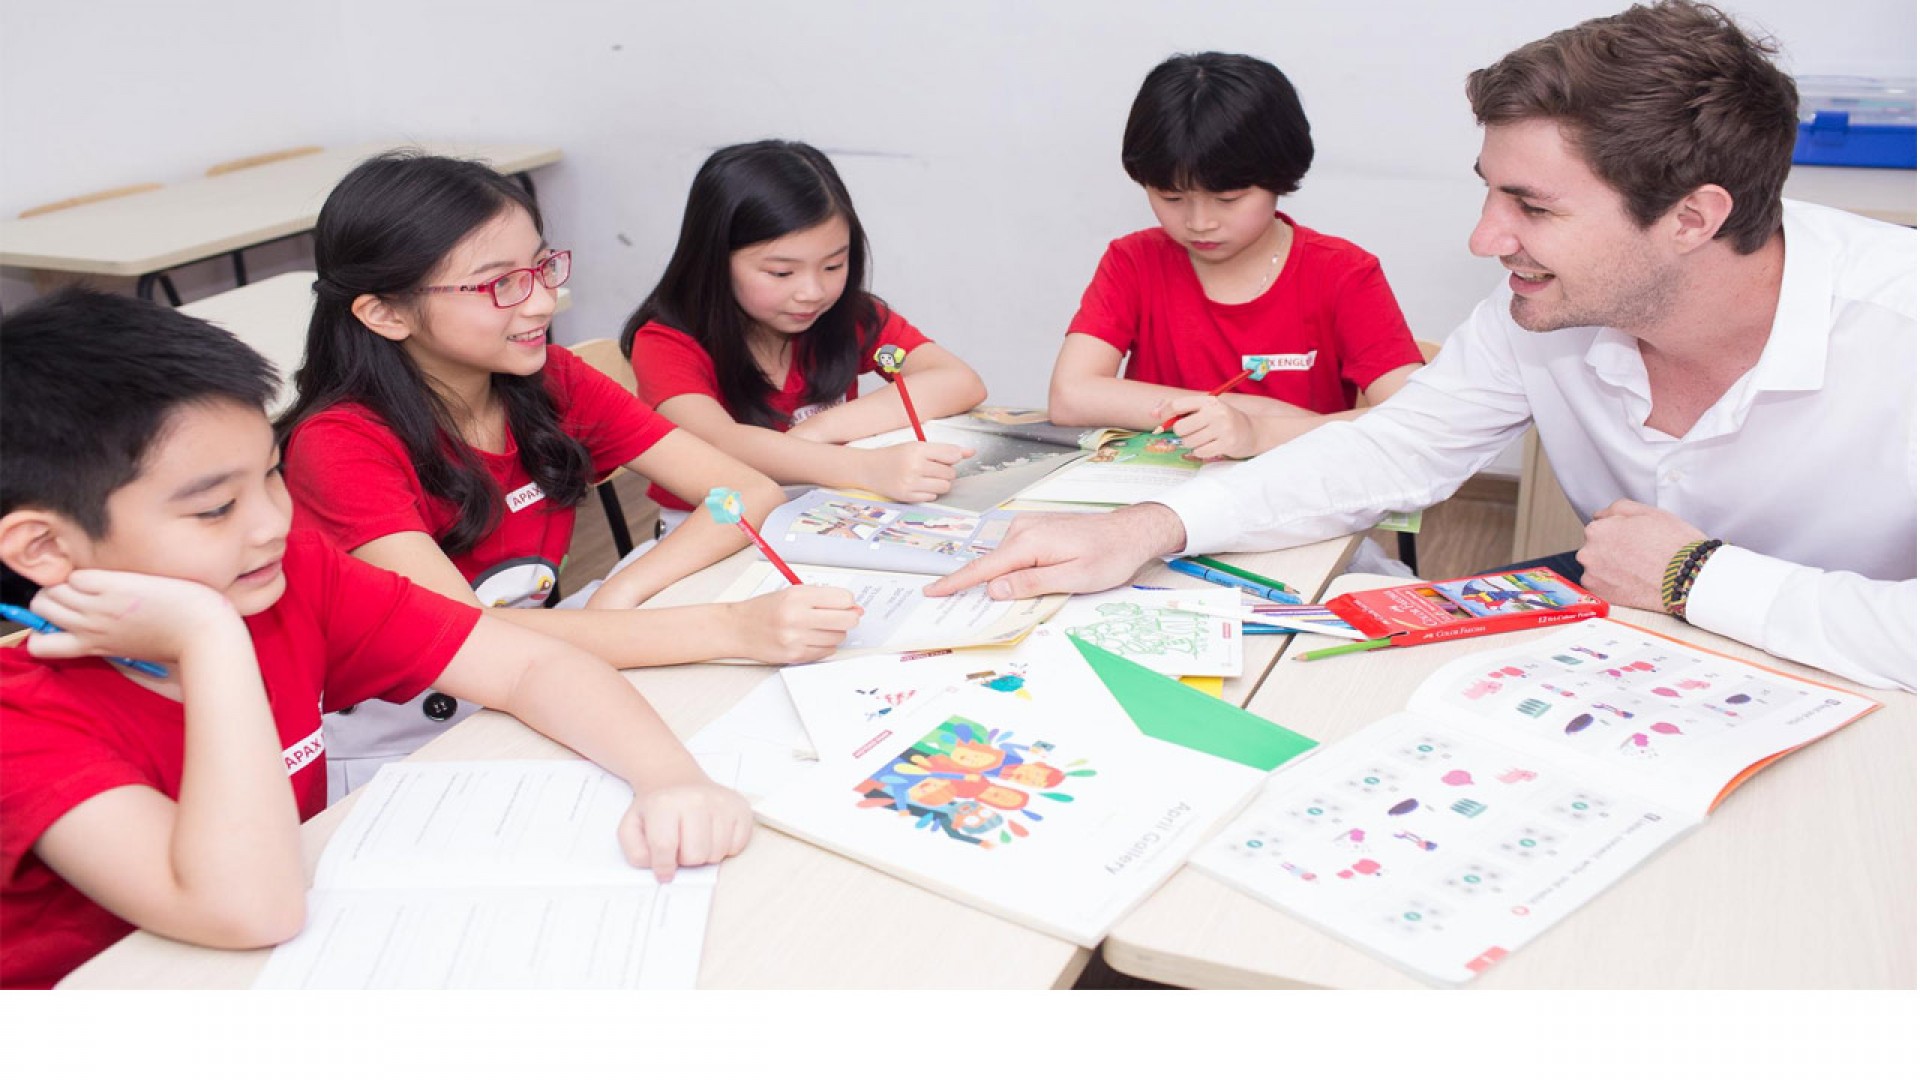 Trung tâm Anh ngữ Apax English Đà Nẵng có xứng đáng là nơi ươm mầm tiếng Anh cho trẻ?